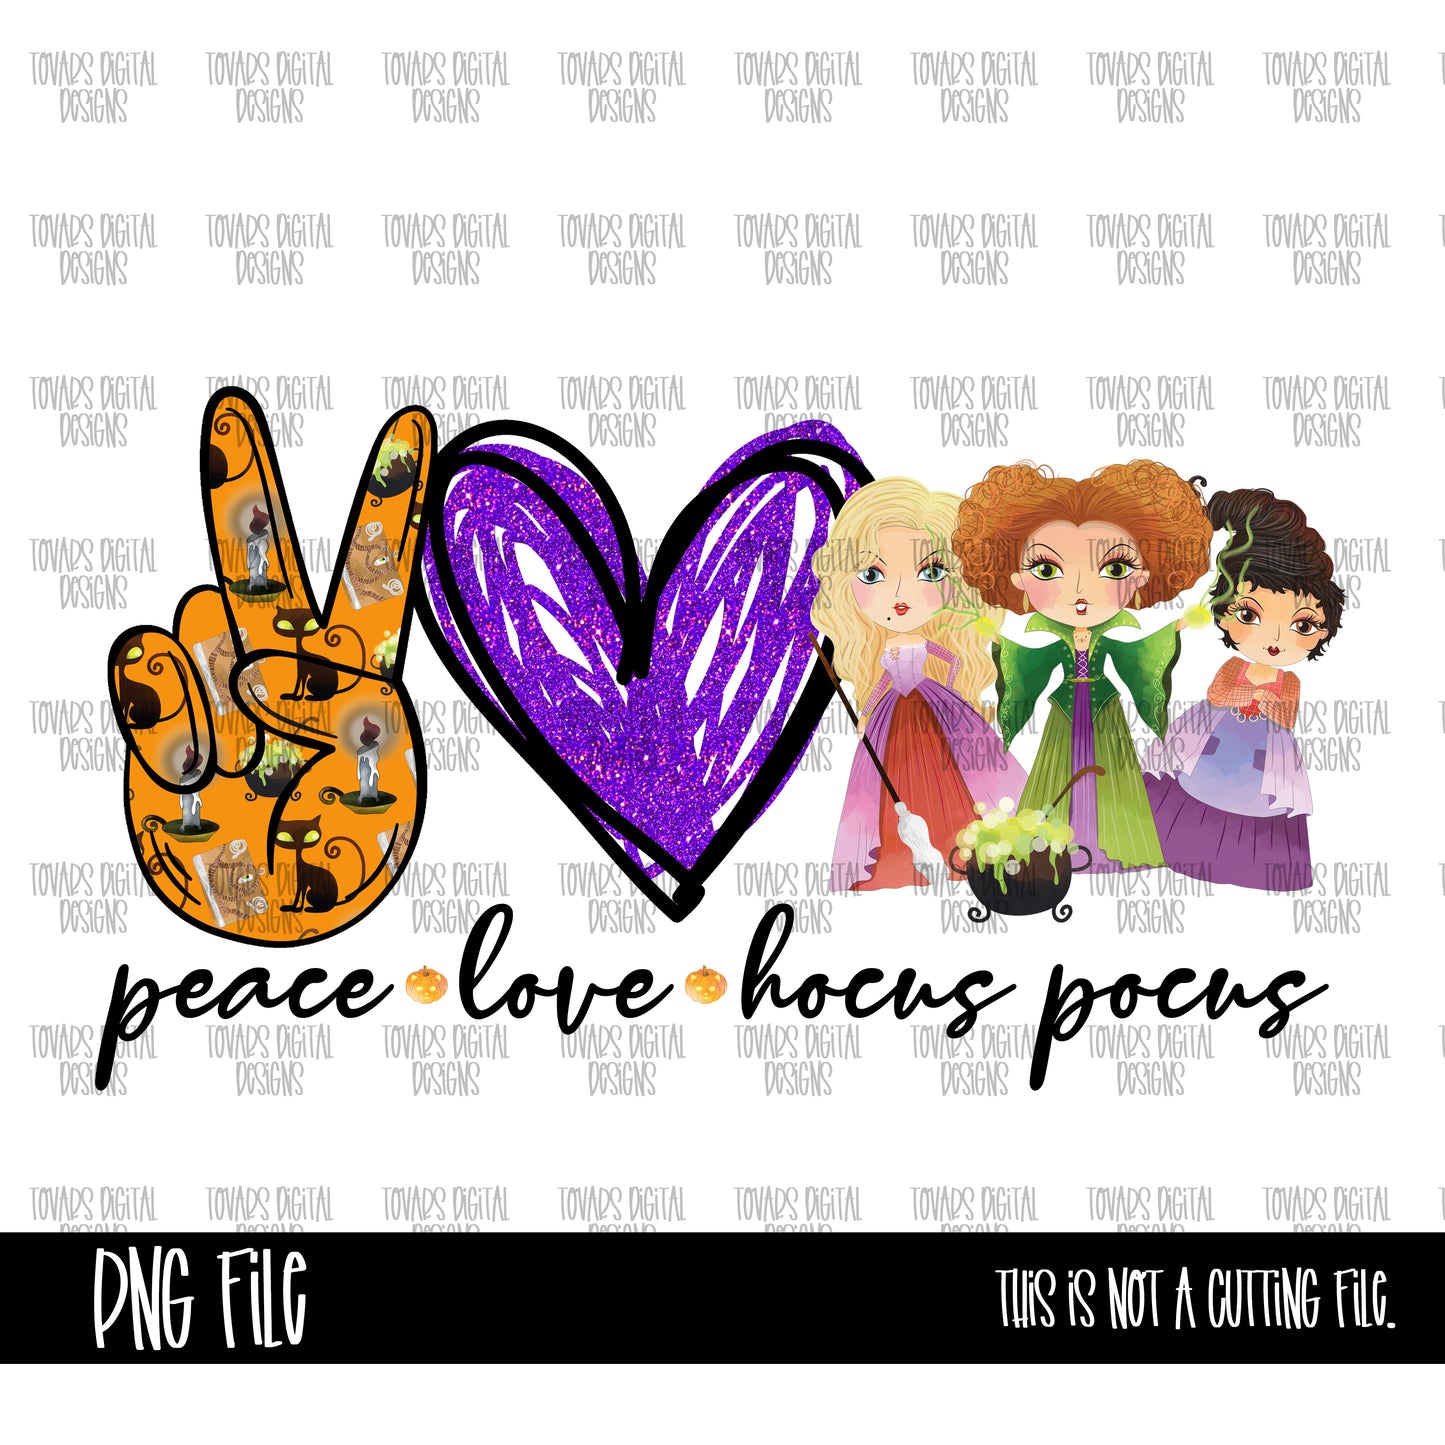 Peace love Hocus Pocus 2 PNG FILE, Hocus pocus design, witch design, halloween png file, halloween sublimation digital design